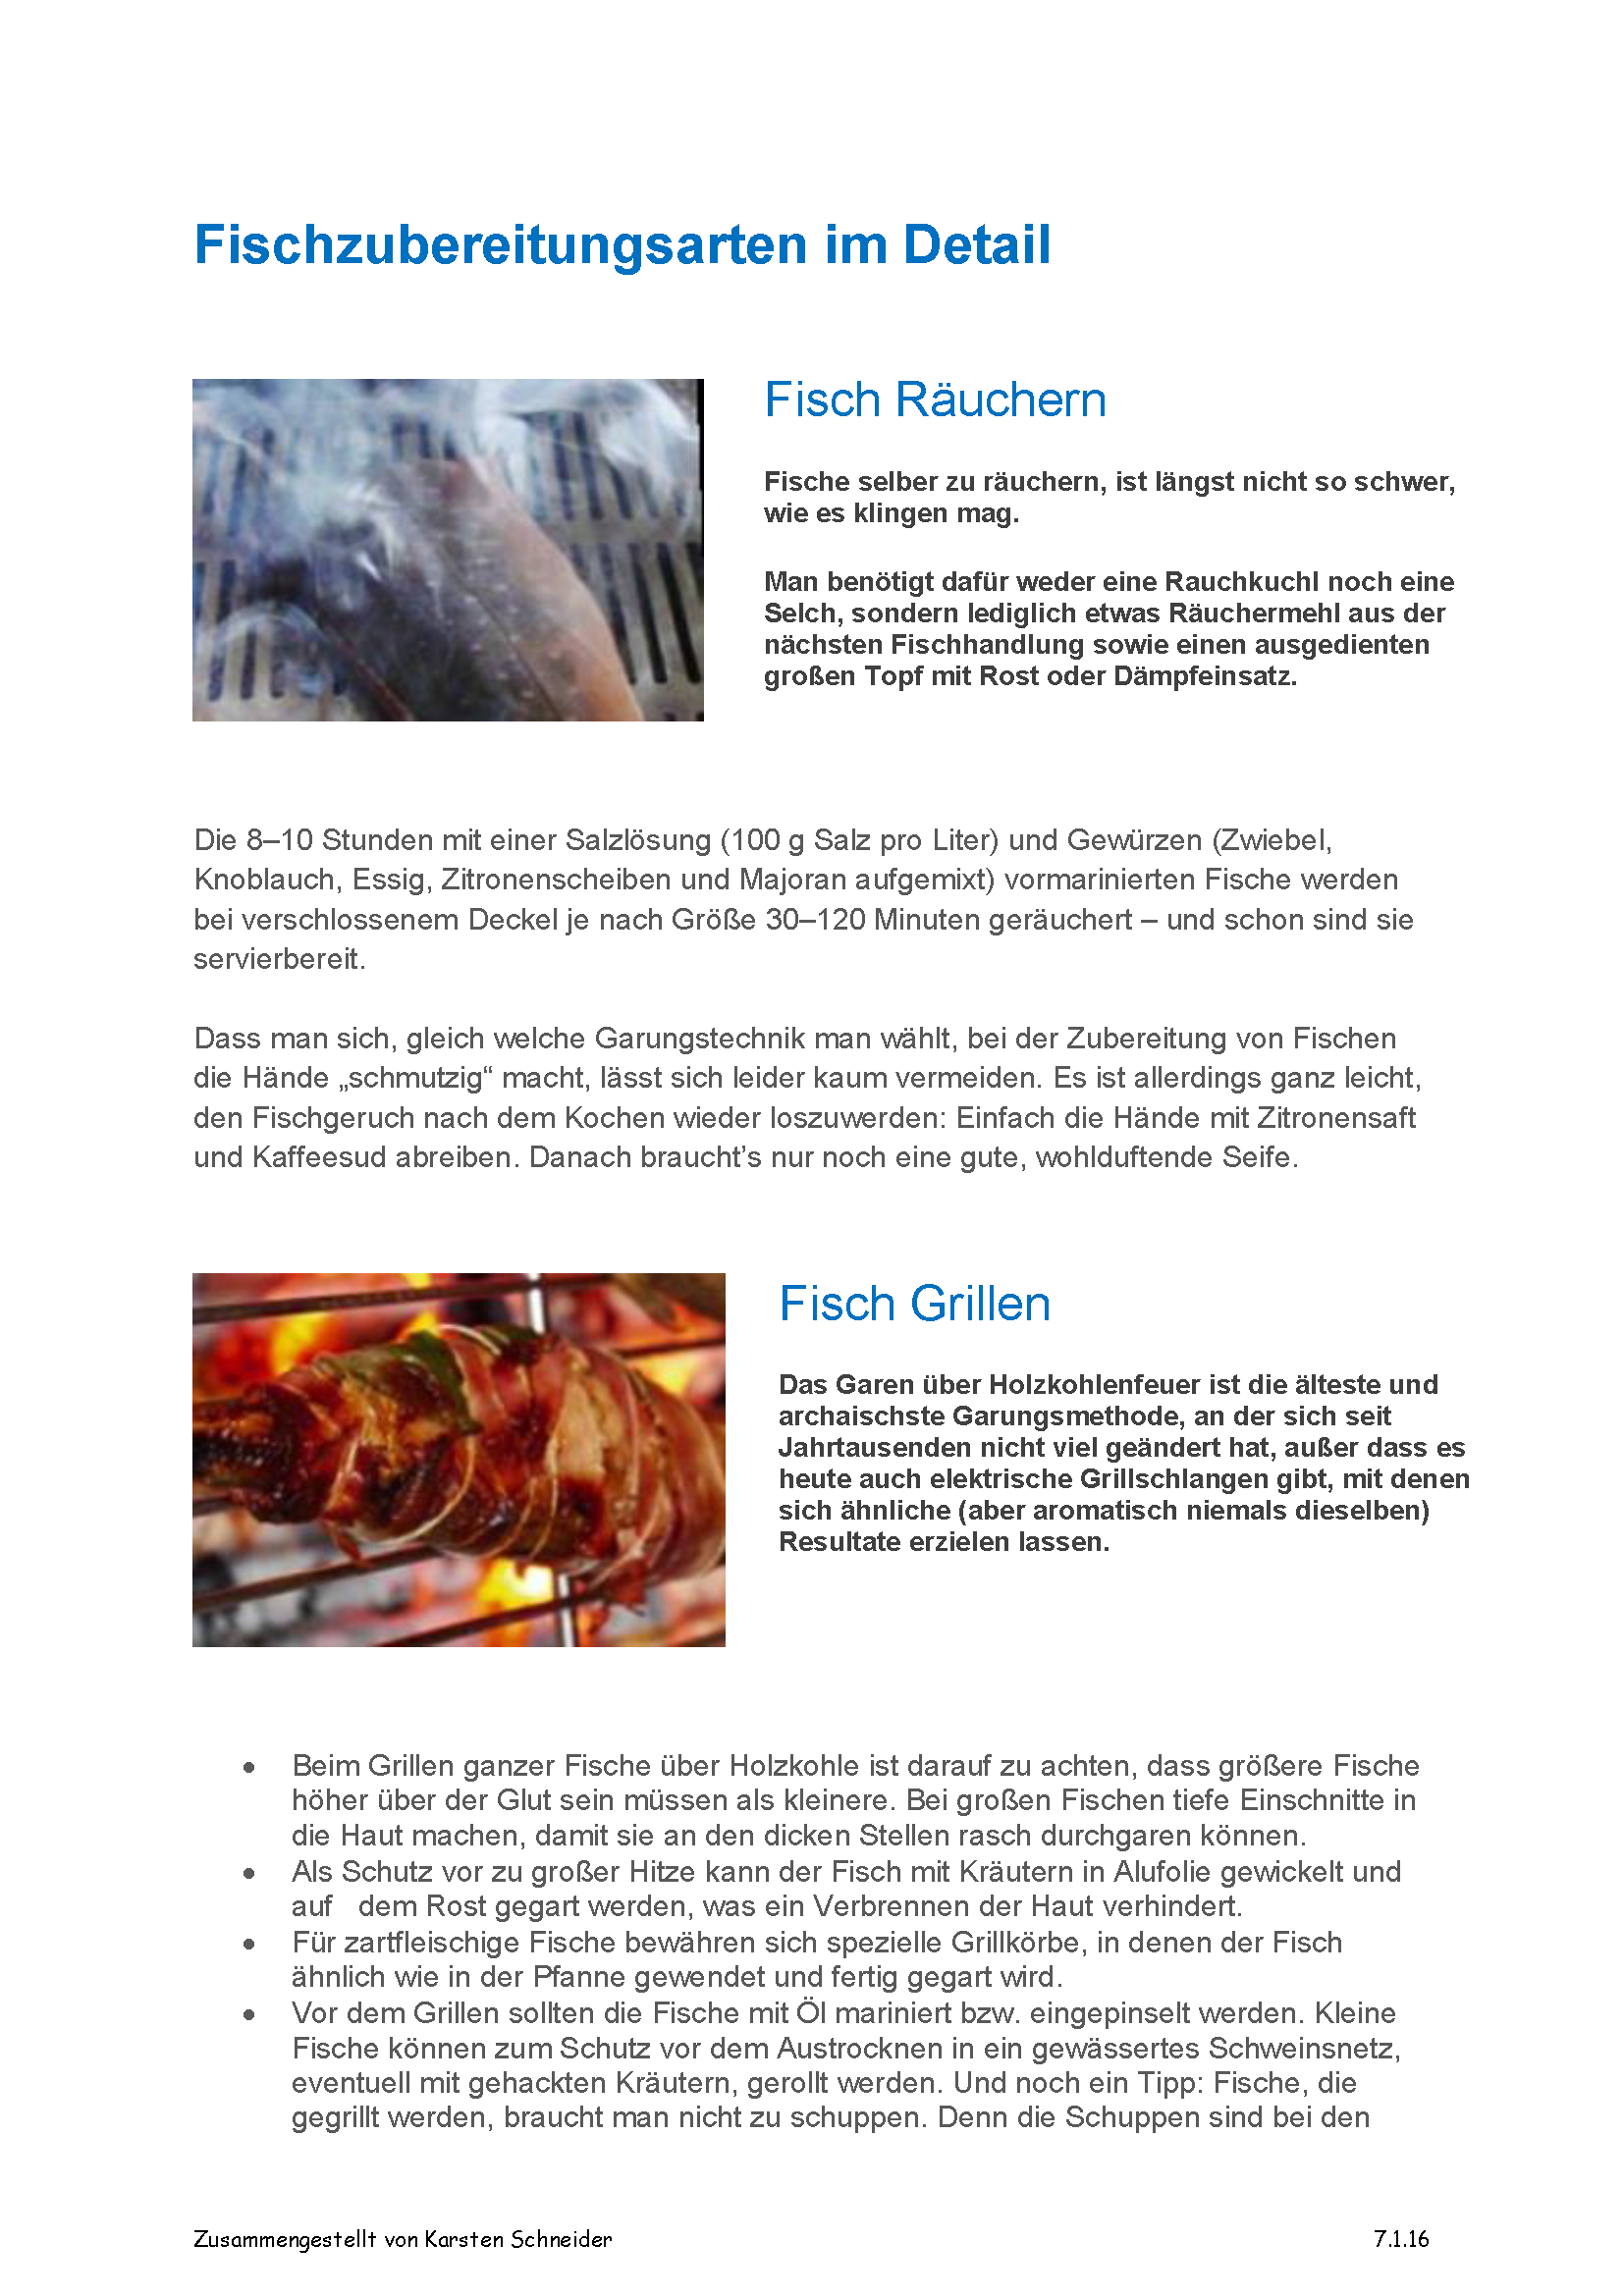 Fischzubereitungsarten im Detail_Seite_1.png - 520.31 KB